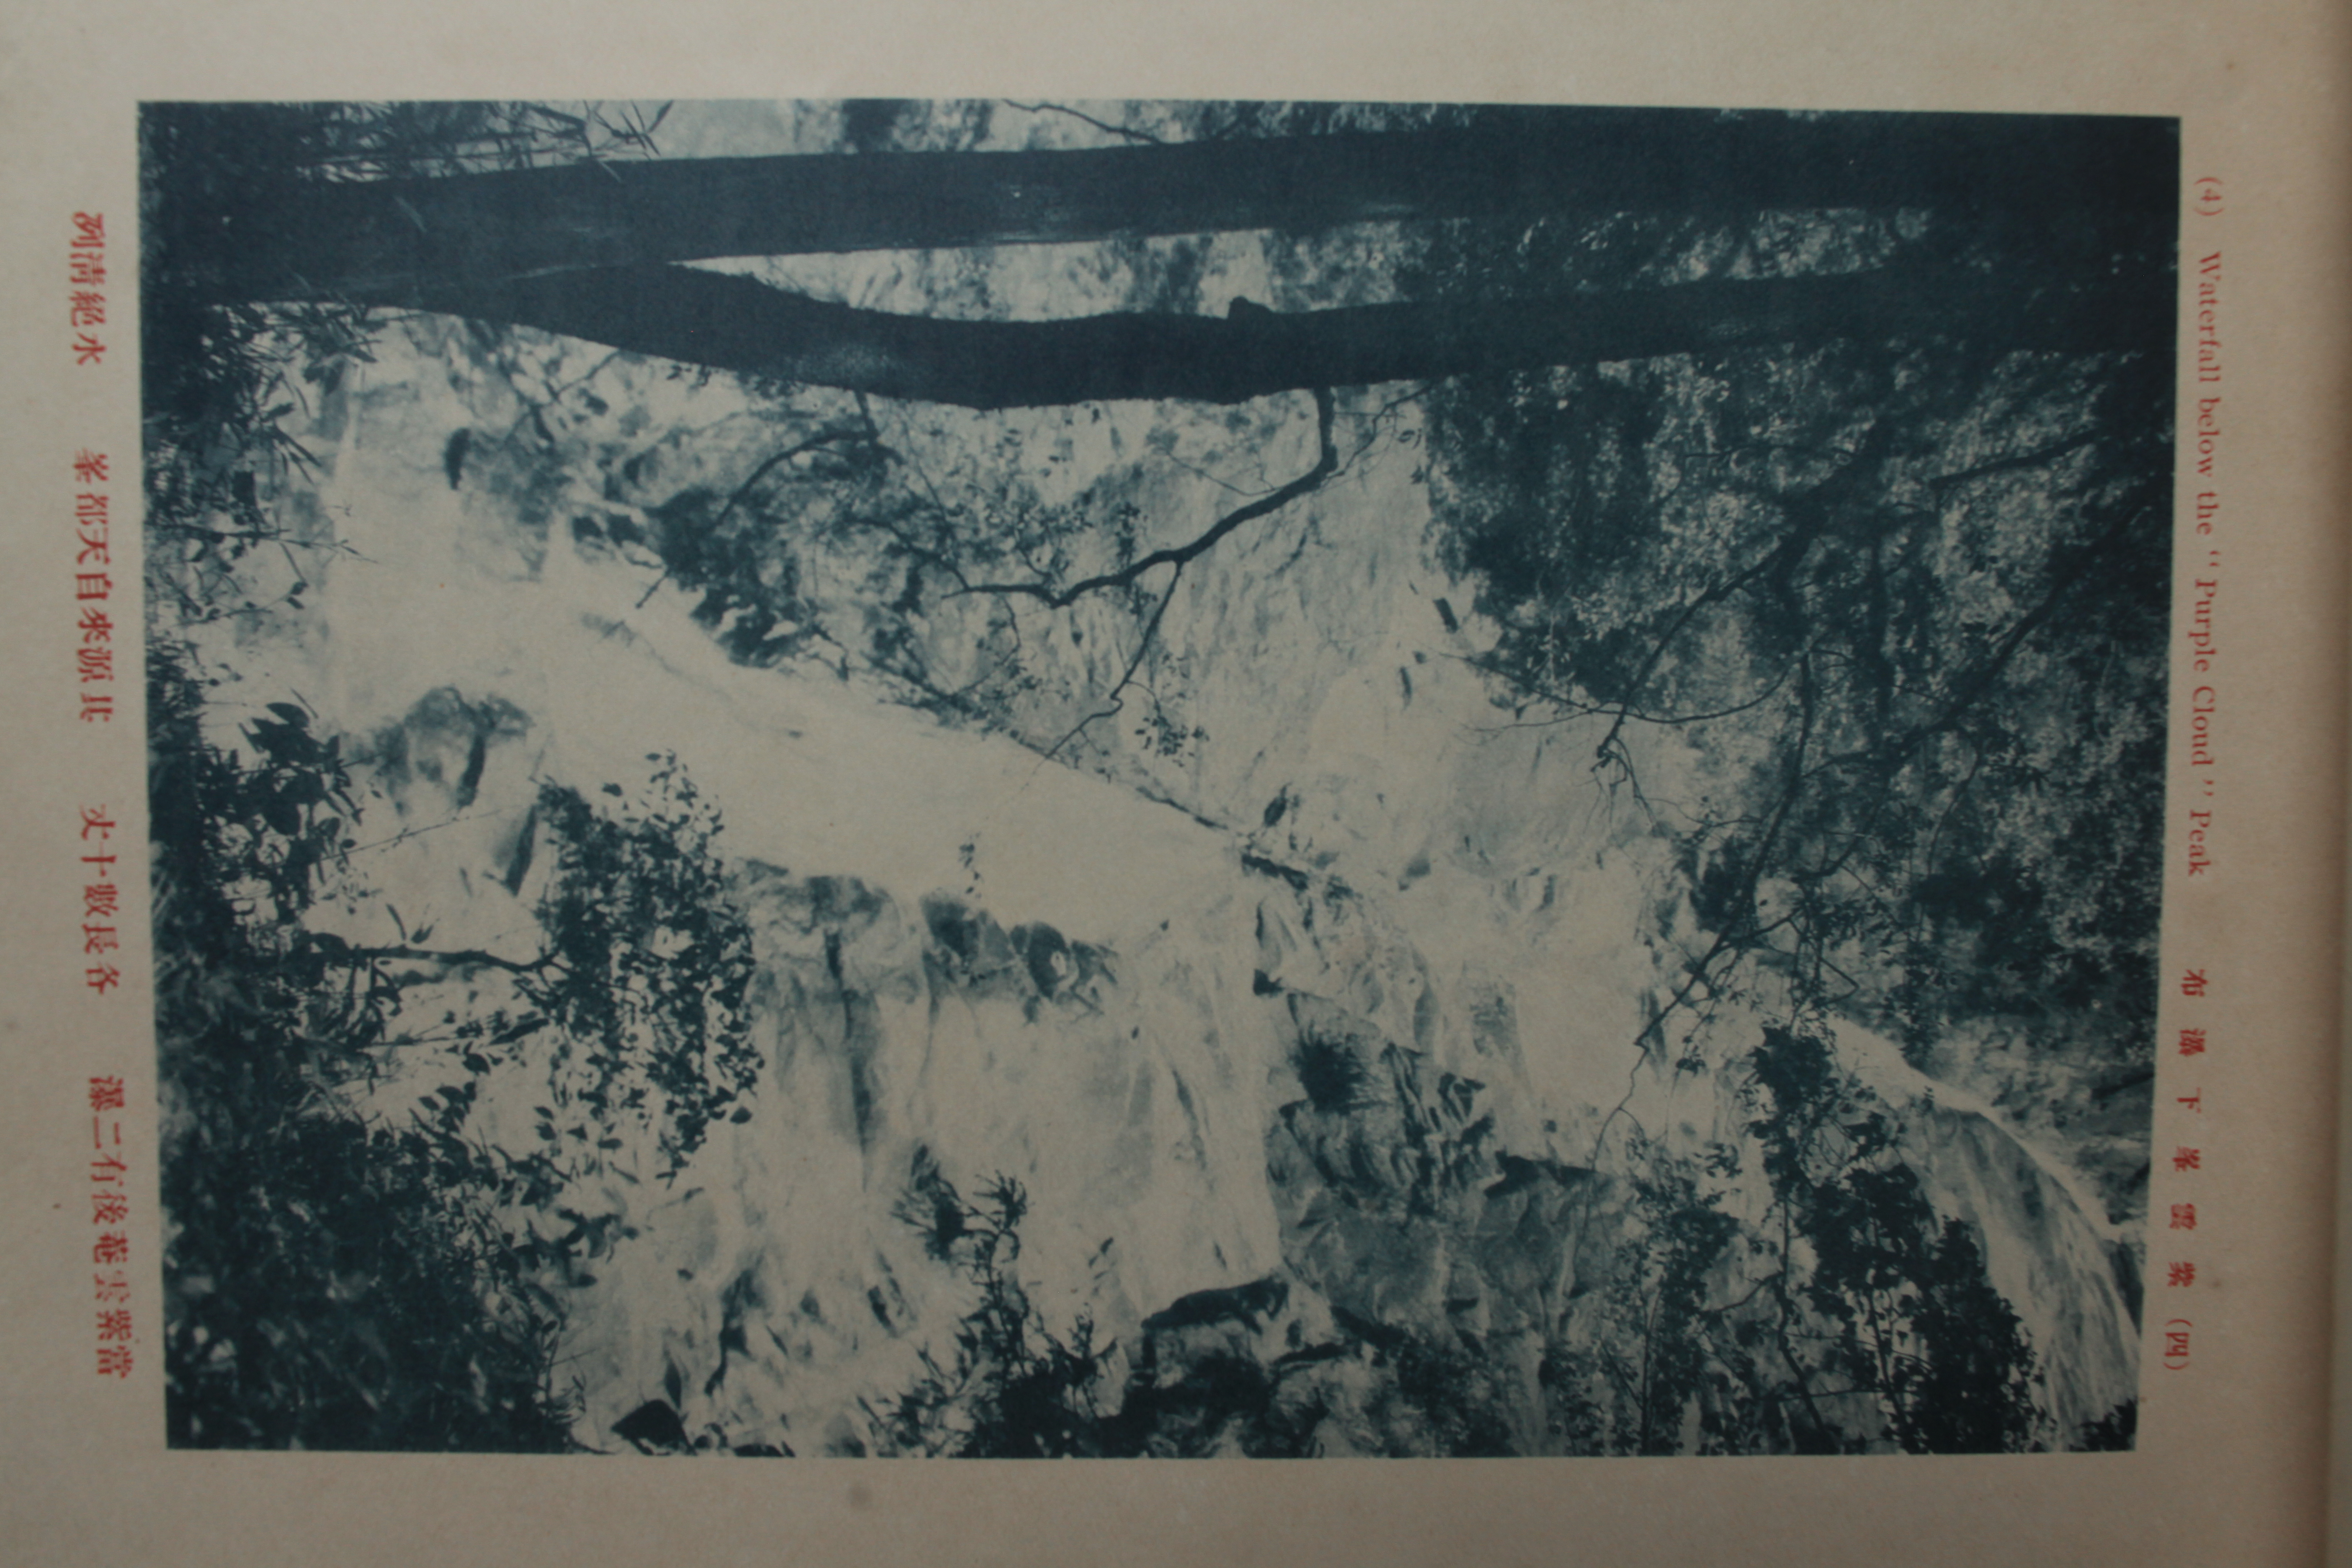 史上最早的黄山老照片，1914年黄炎培黄山行摄记